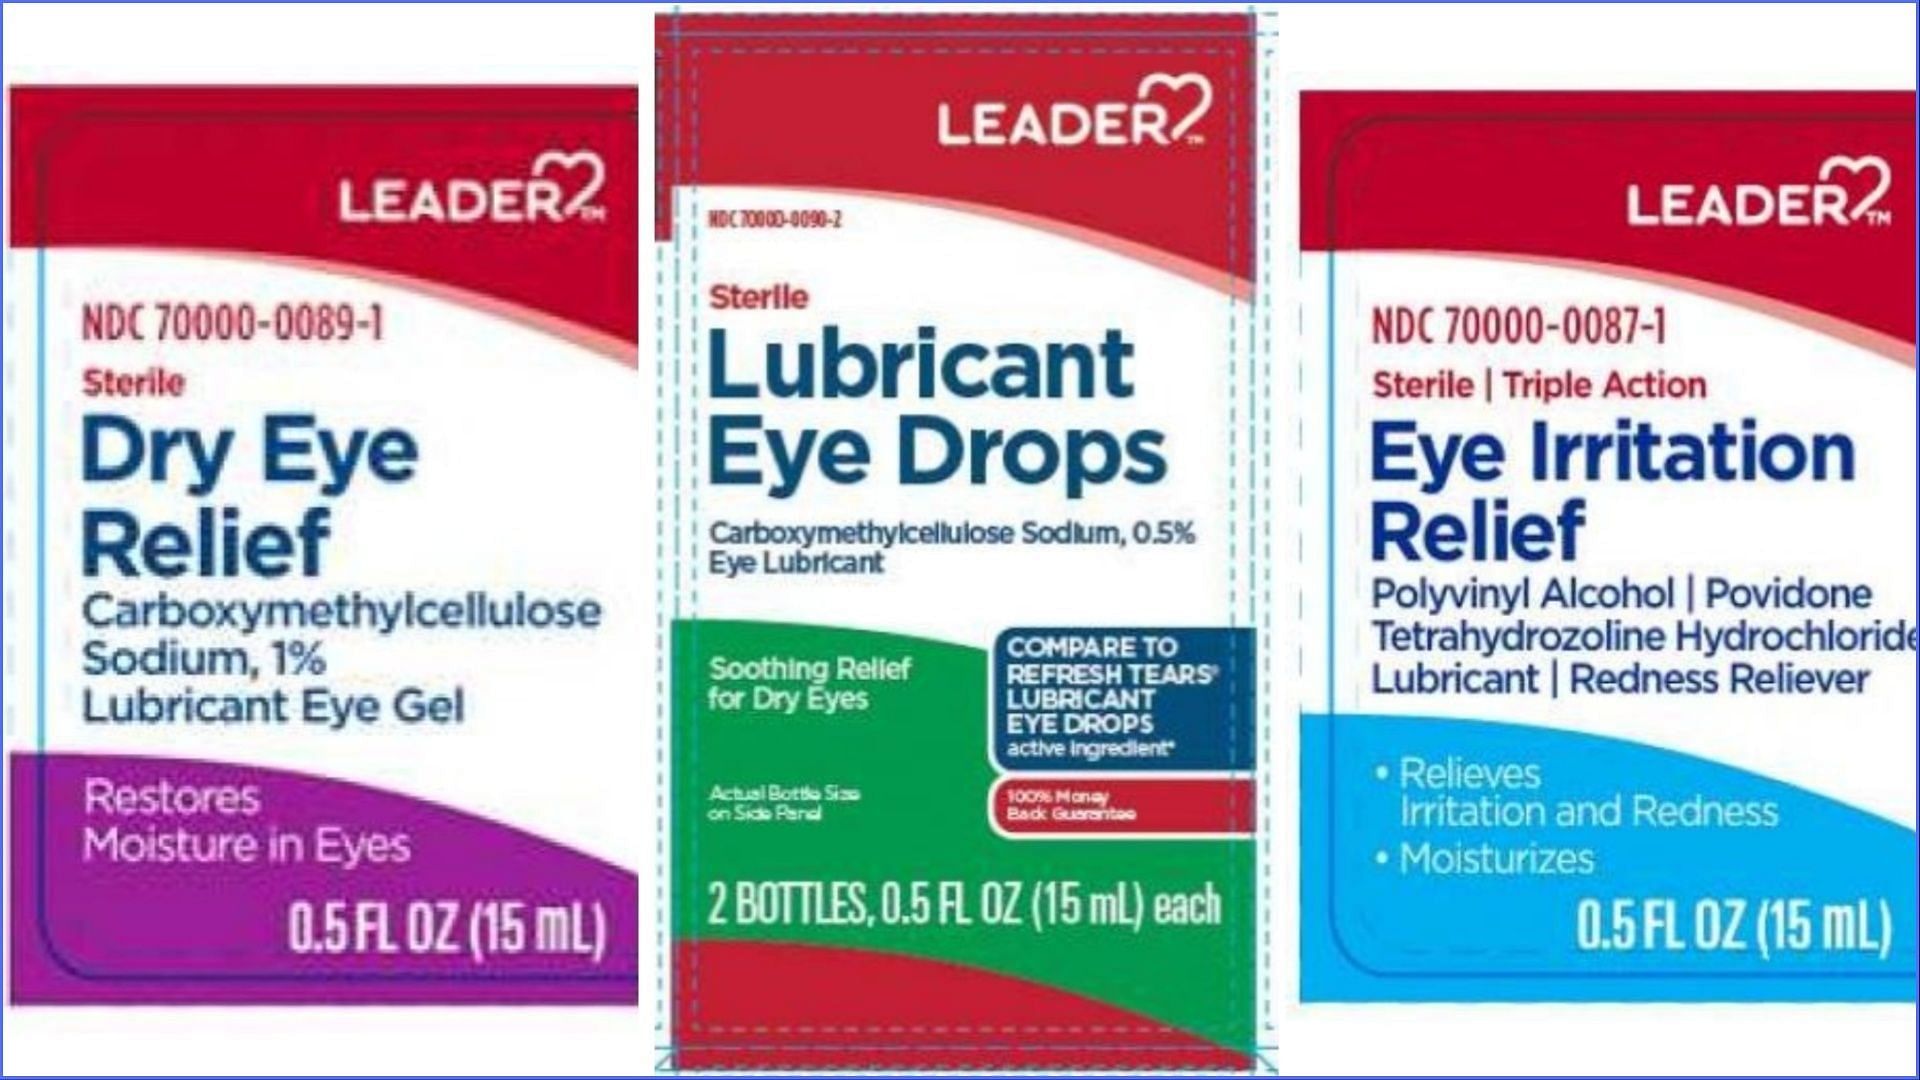 Cardinal Health, Inc. recalls eye drop products over bacterial contamination concerns (Image via FDA)